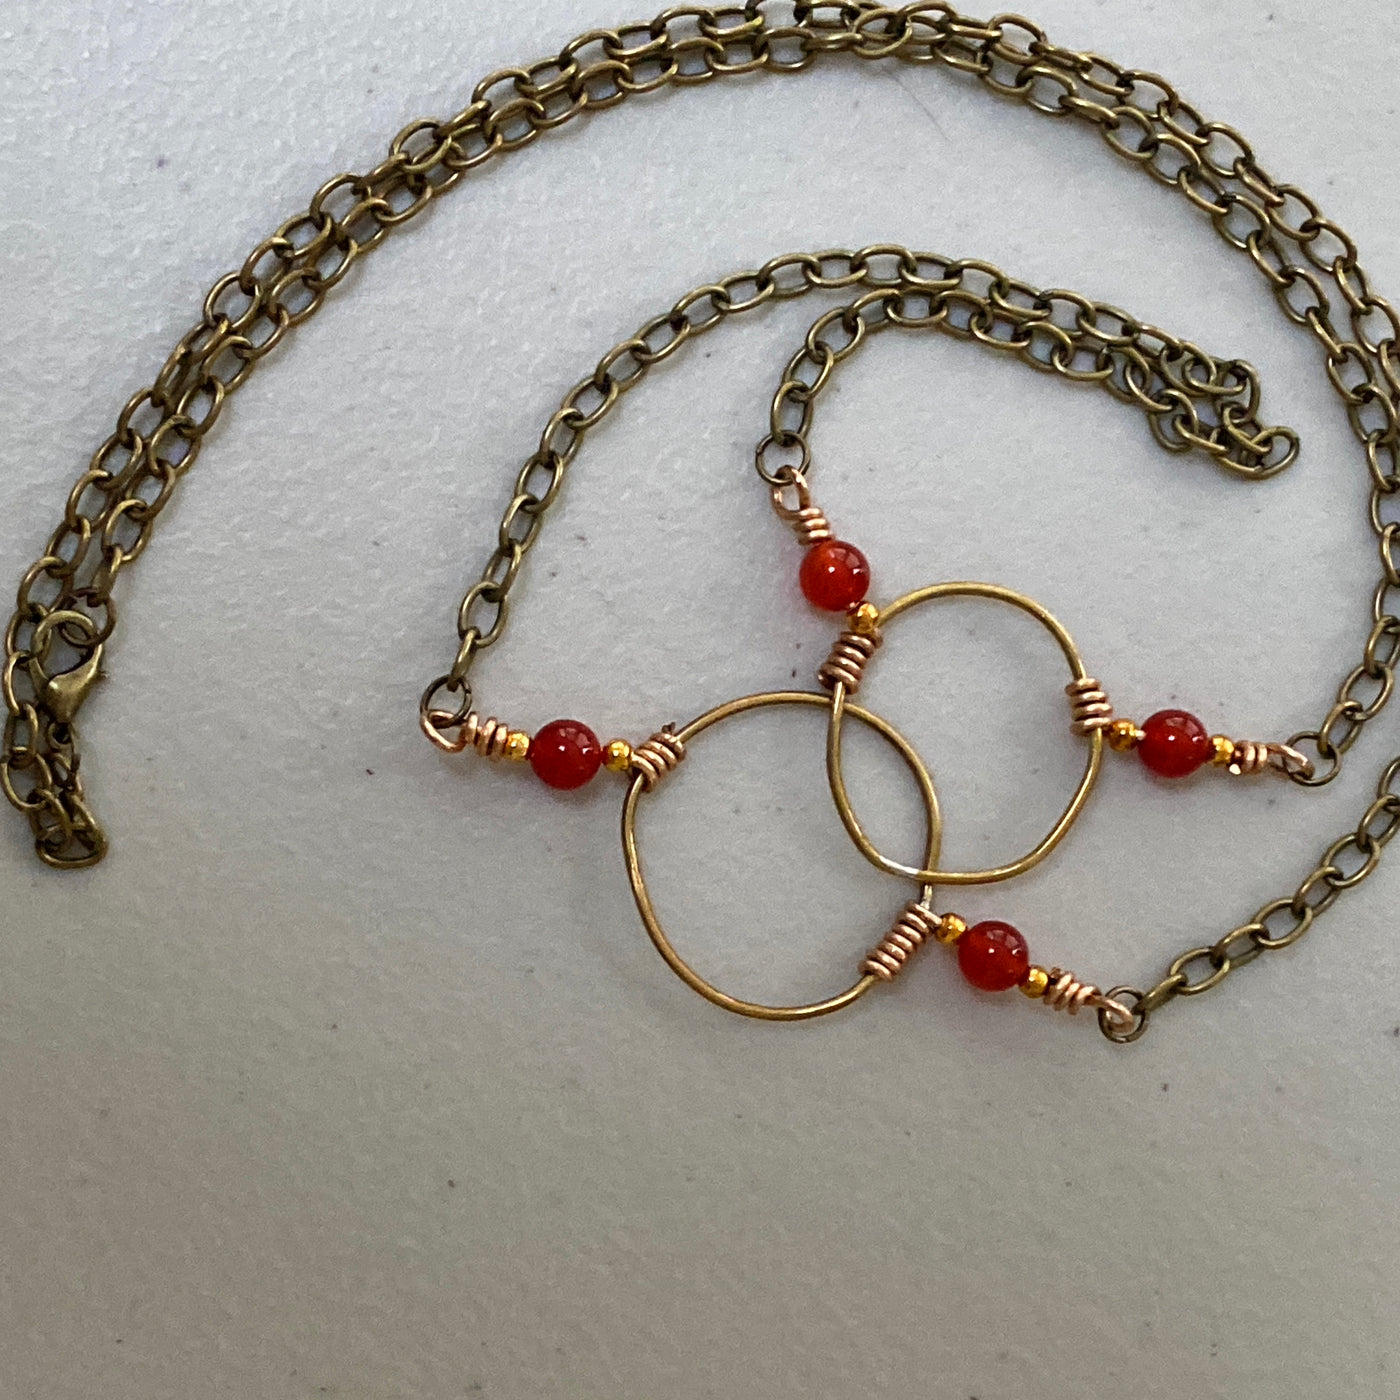 Halskette aus rotem Achat und Kupferkreisen.